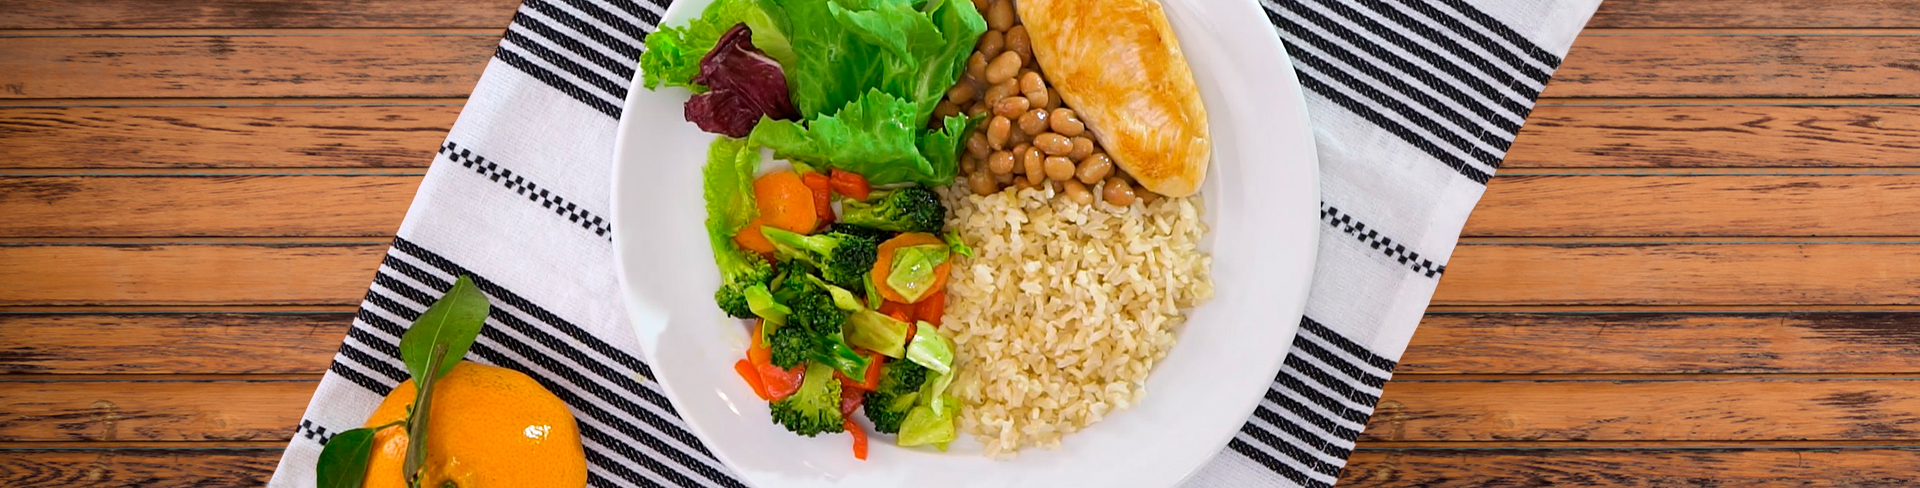 Prato com arroz, feijão, uma carne e uma salada com diversas verduras